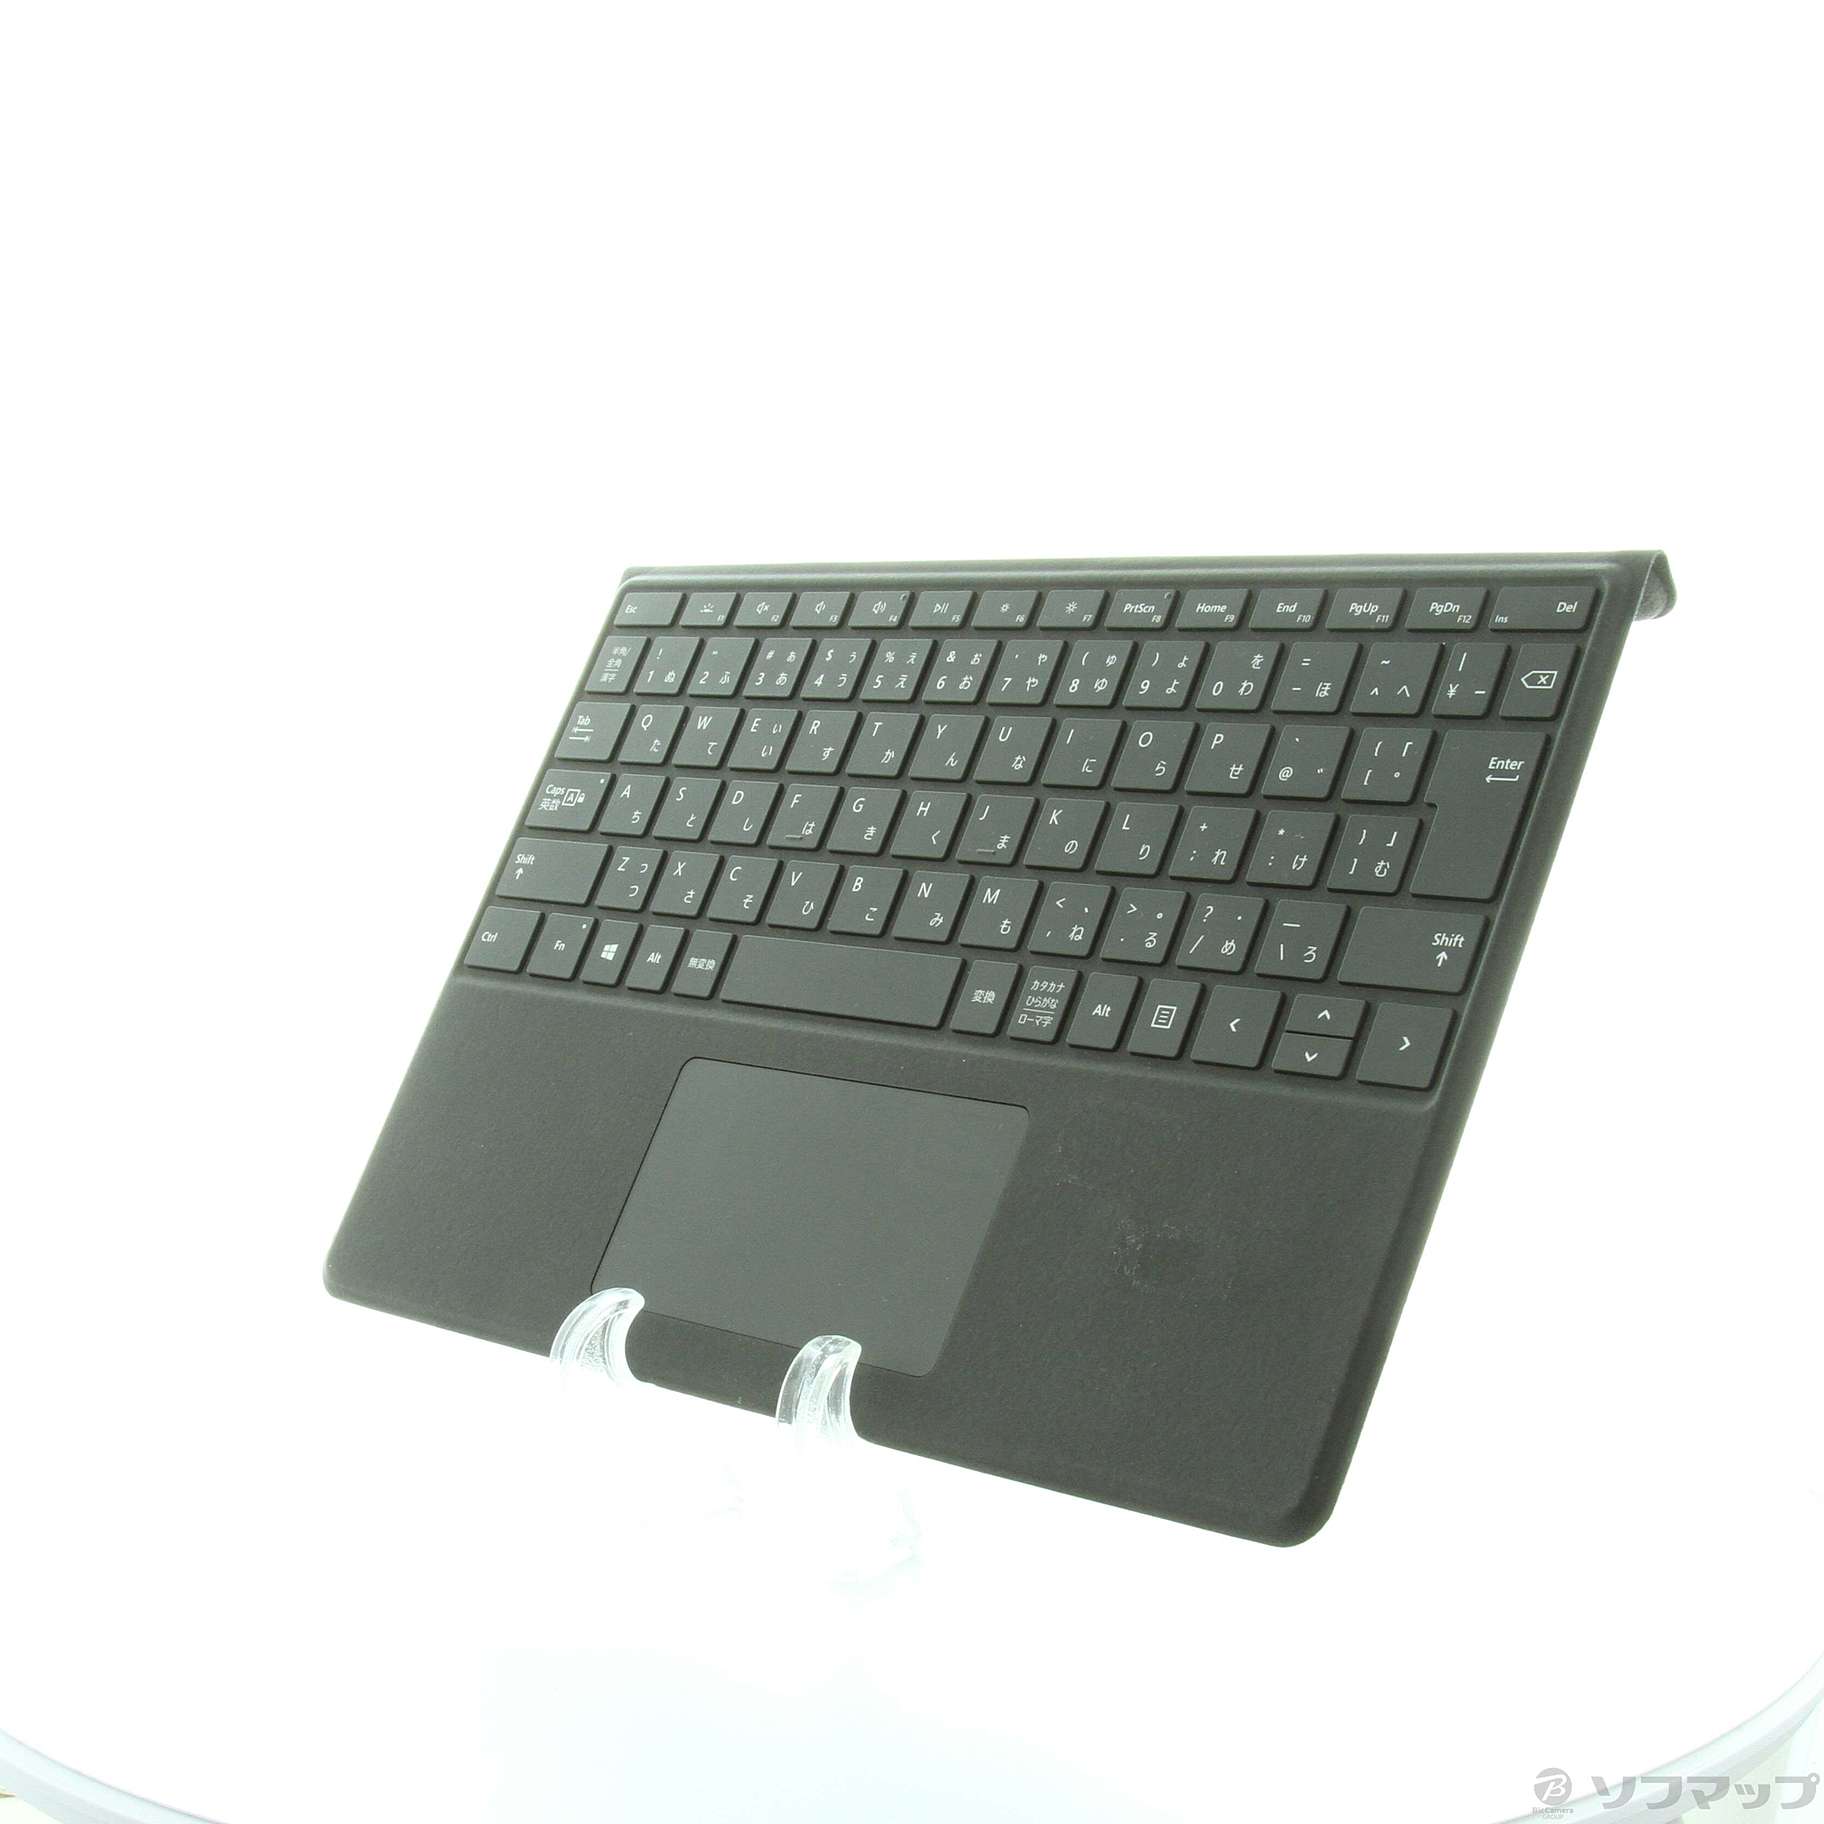 Surface Pro Signature キーボード スリム ペン付き BLK - PC周辺機器